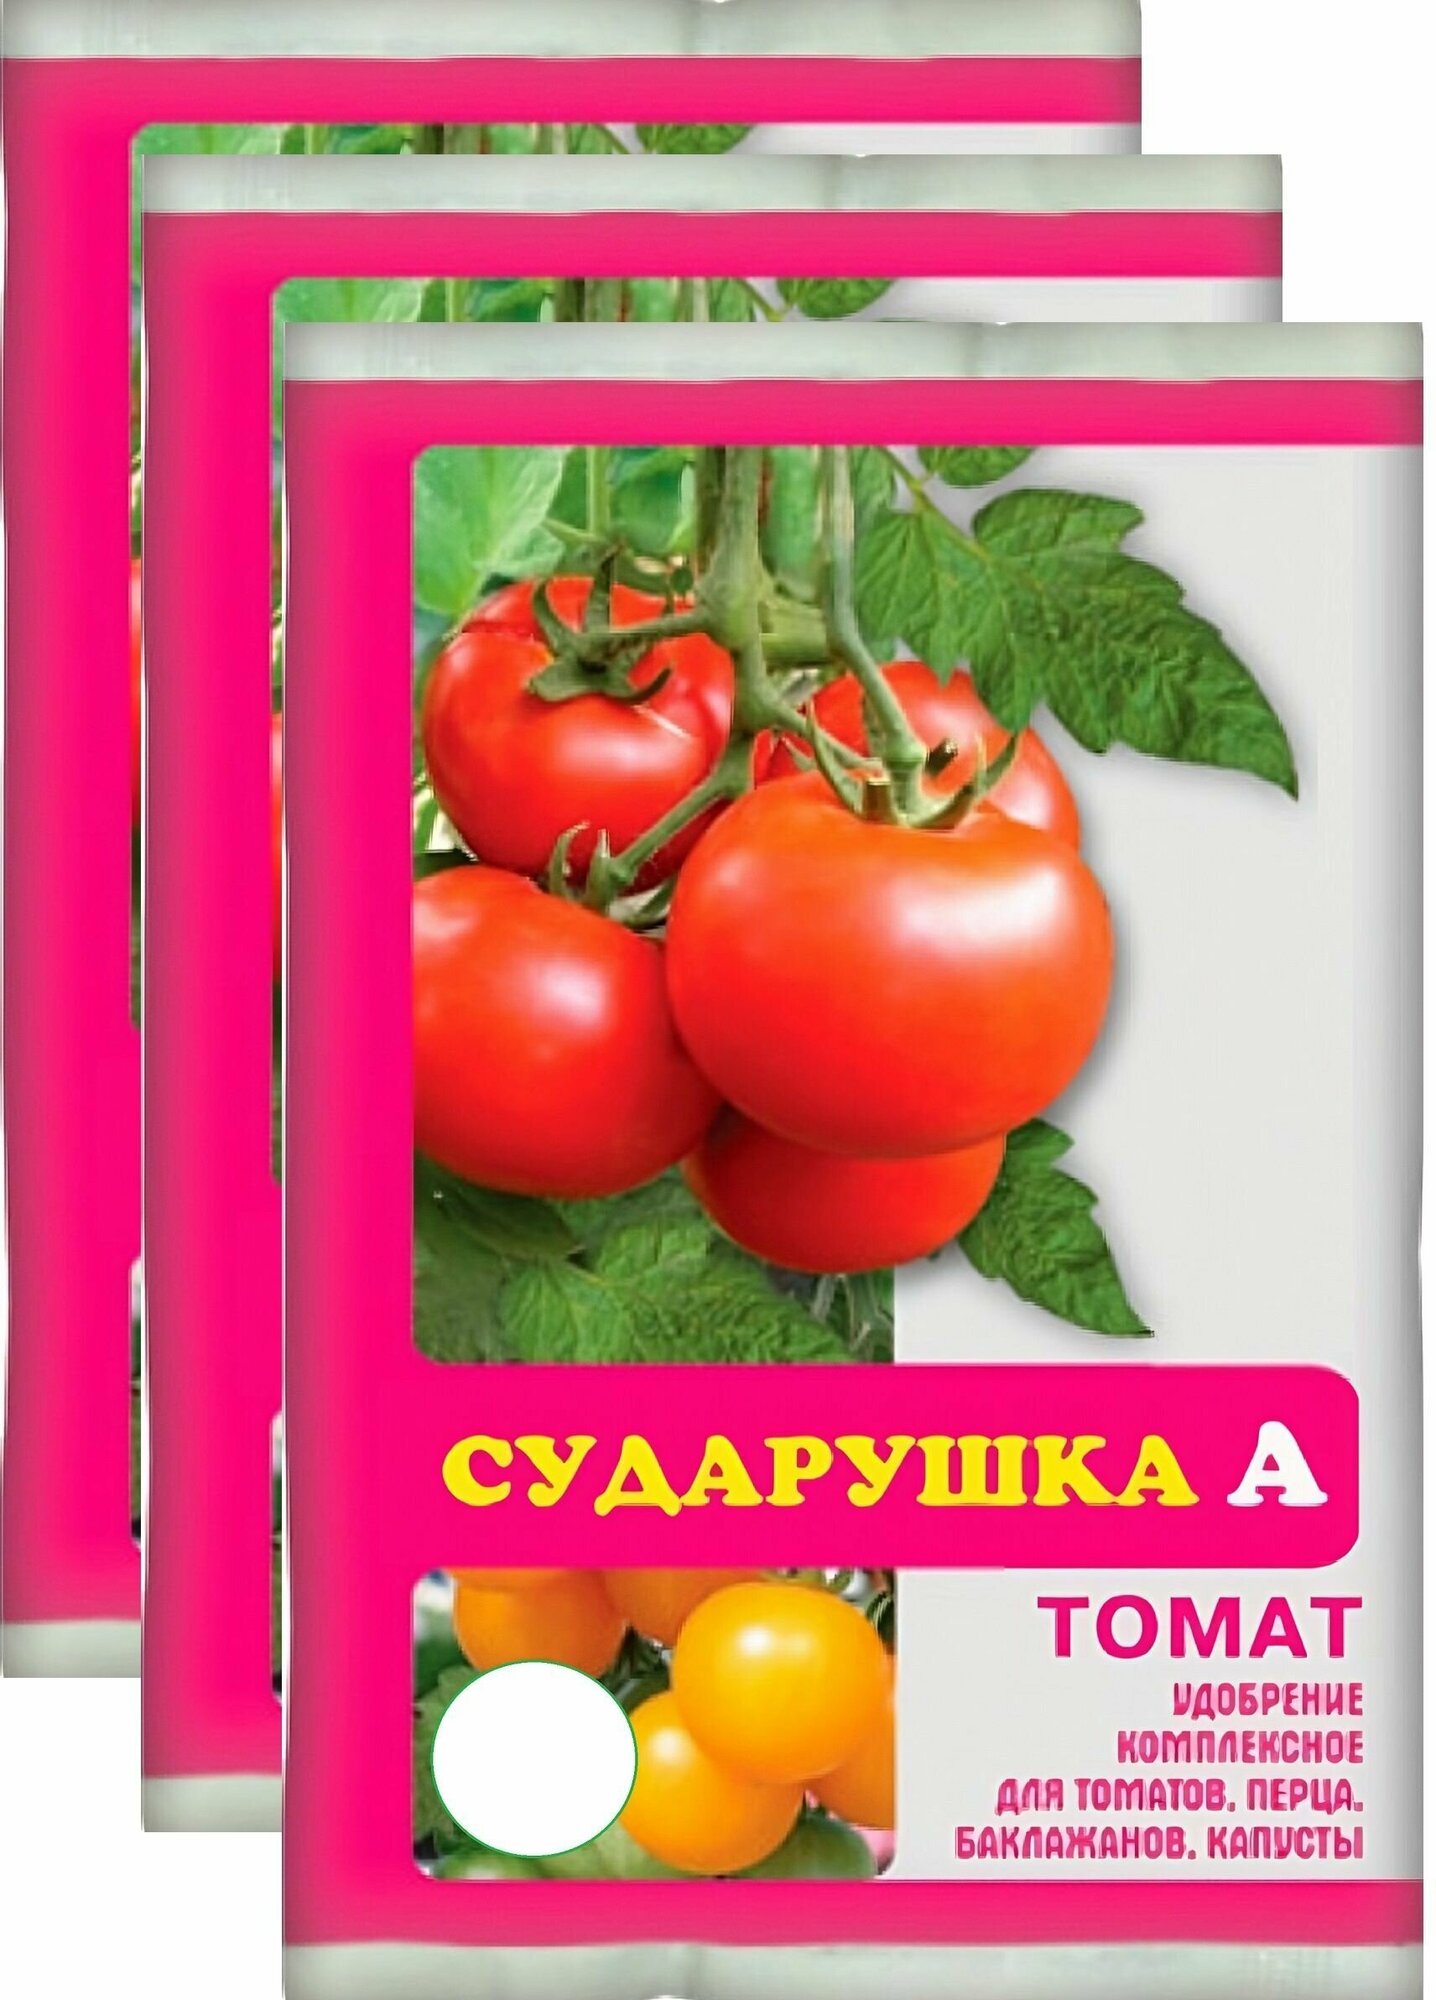 Удобрение для томатов "Сударушка", 3х60 г, подходит для перцев, баклажанов и других овощей. Стимулирует рост плодов, повышает их вкусовую ценность